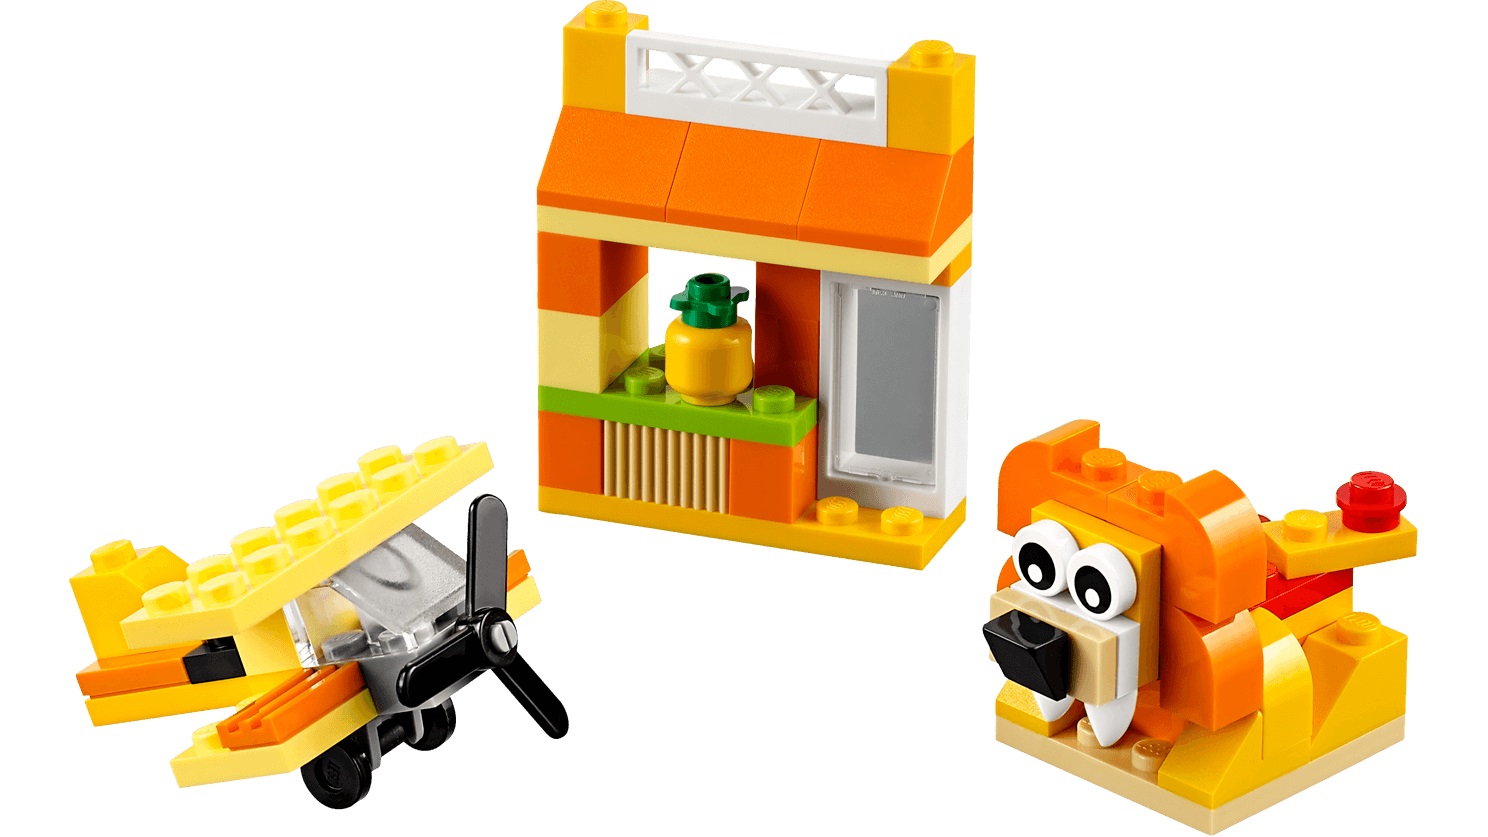 solo instrucciones, sin ladrillos Lego instrucciones de construcción 4207 